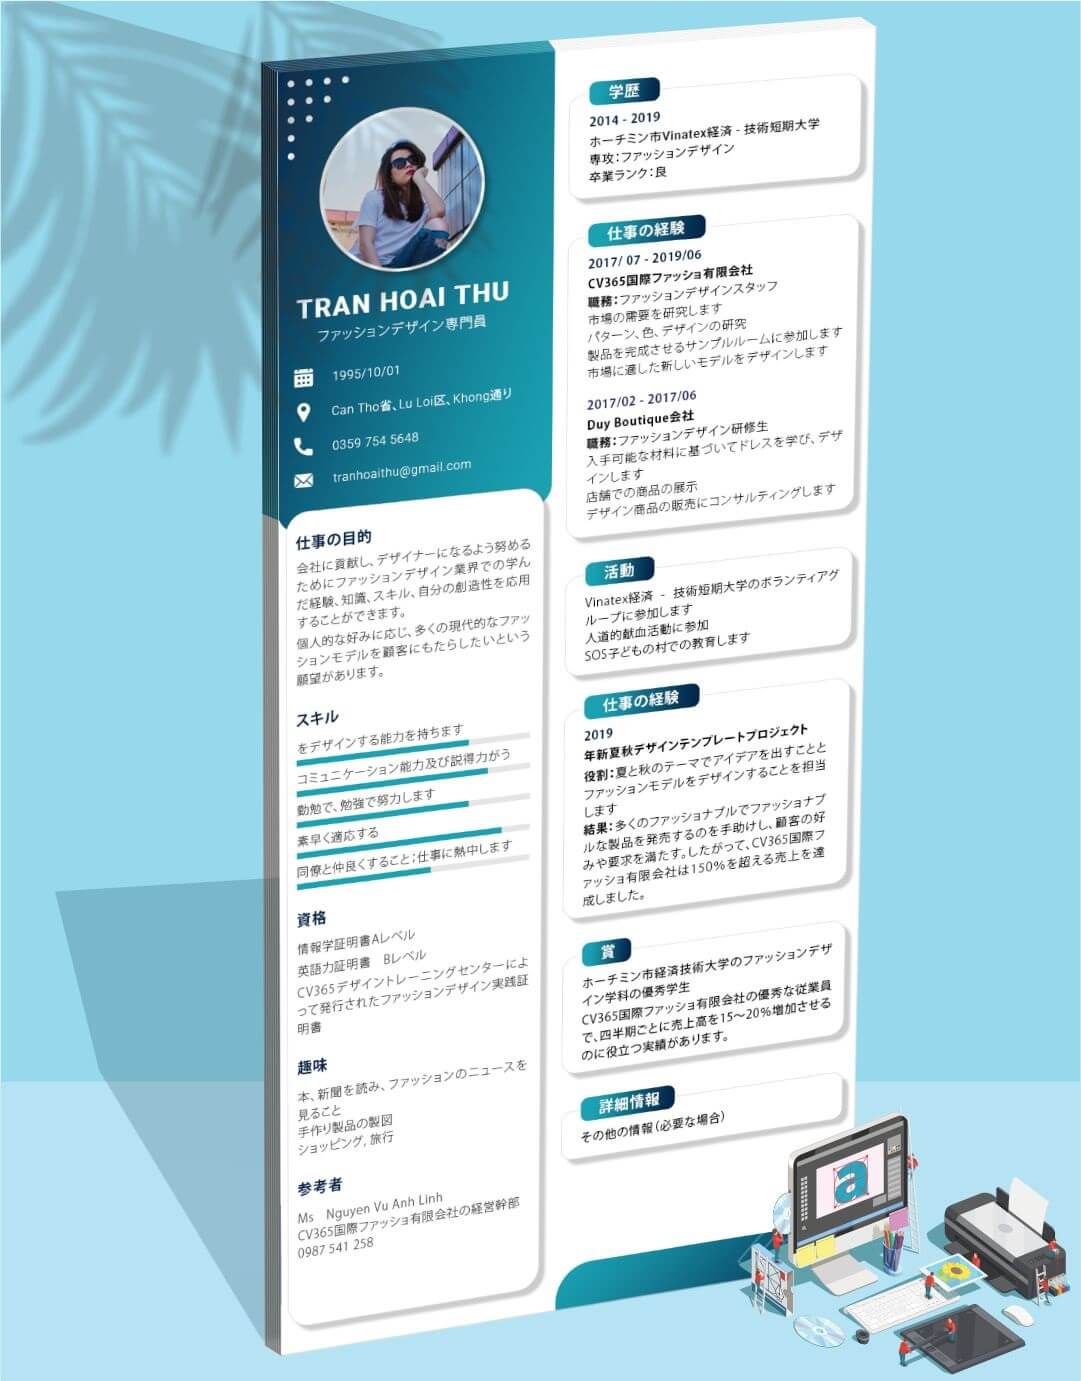 Mẫu CV tiếng Nhật ngoại hình đẹp giúp ghi điểm nhà tuyển dụng